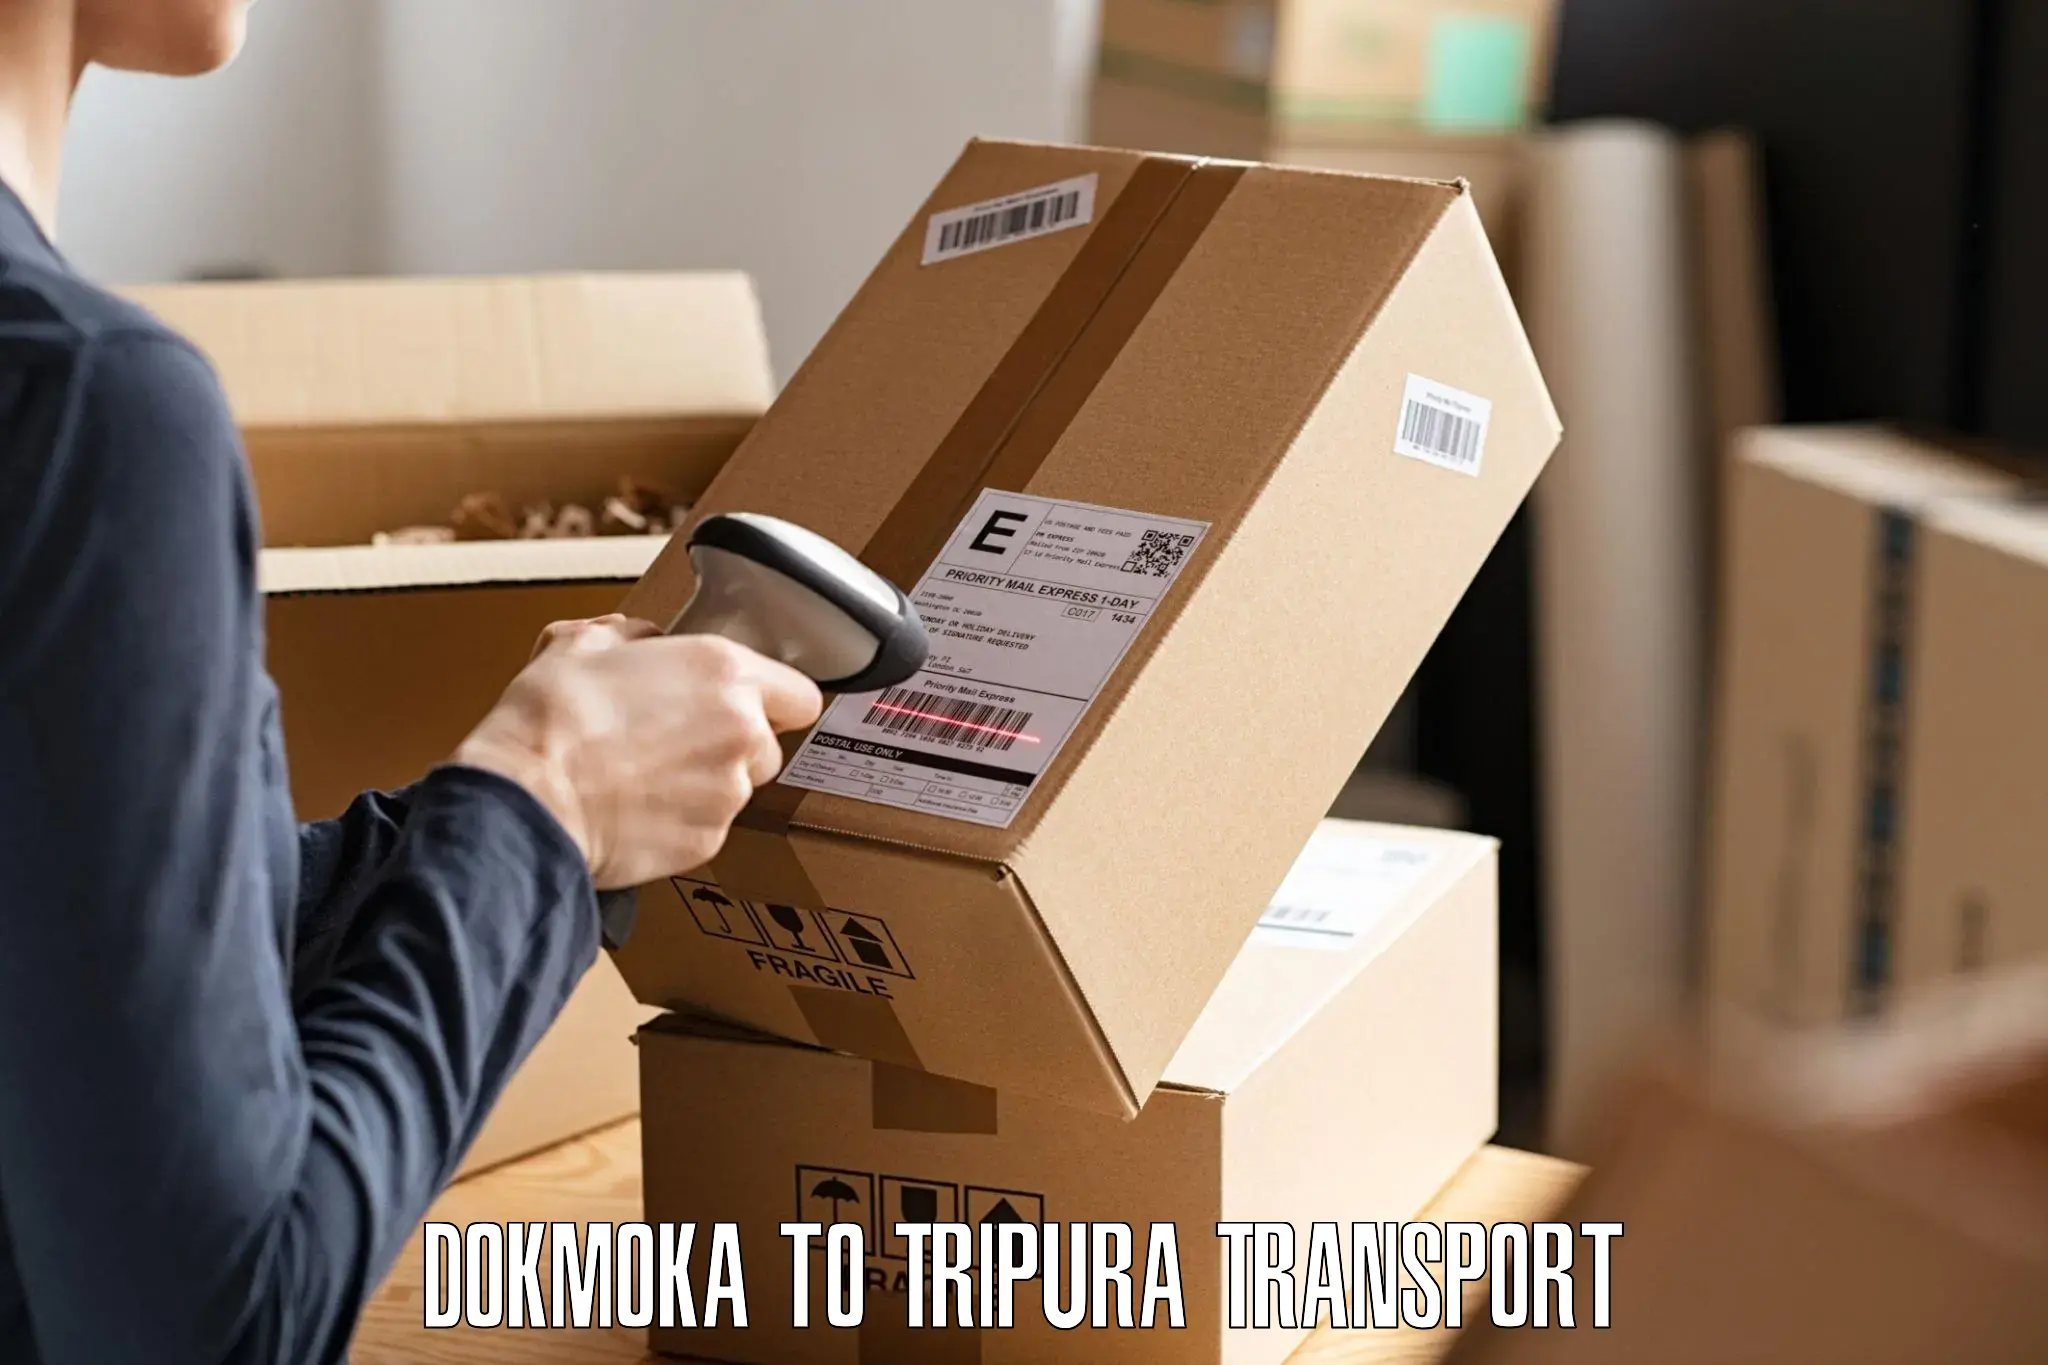 Interstate transport services Dokmoka to IIIT Agartala